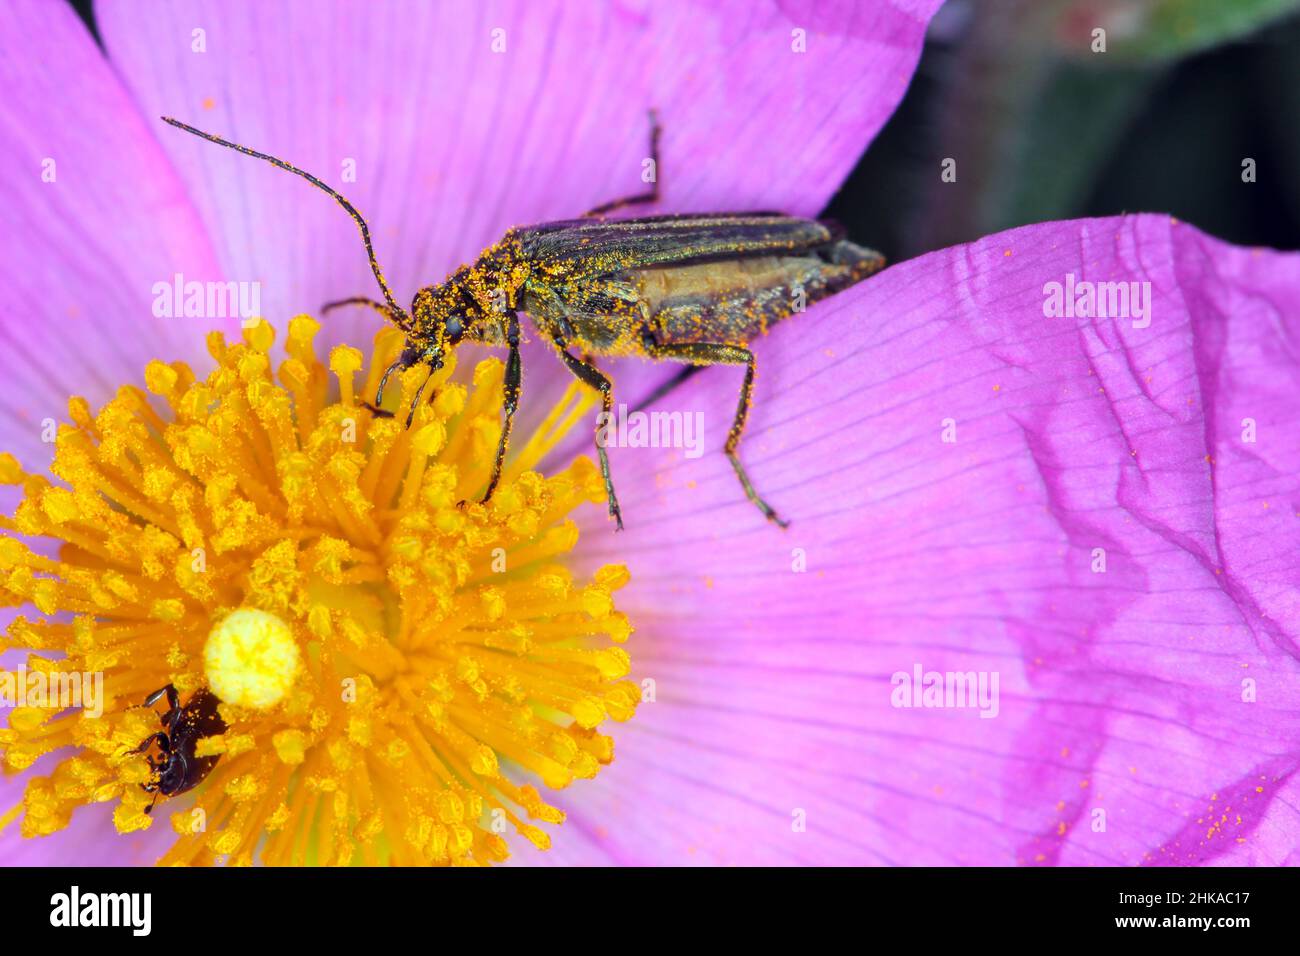 Oedemera nobilis, también conocido como el escarabajo de aceite falso, escarabajo de flor de patas gruesas o escarabajo hinchado, familia Oedemeridae, una especie común. Foto de stock